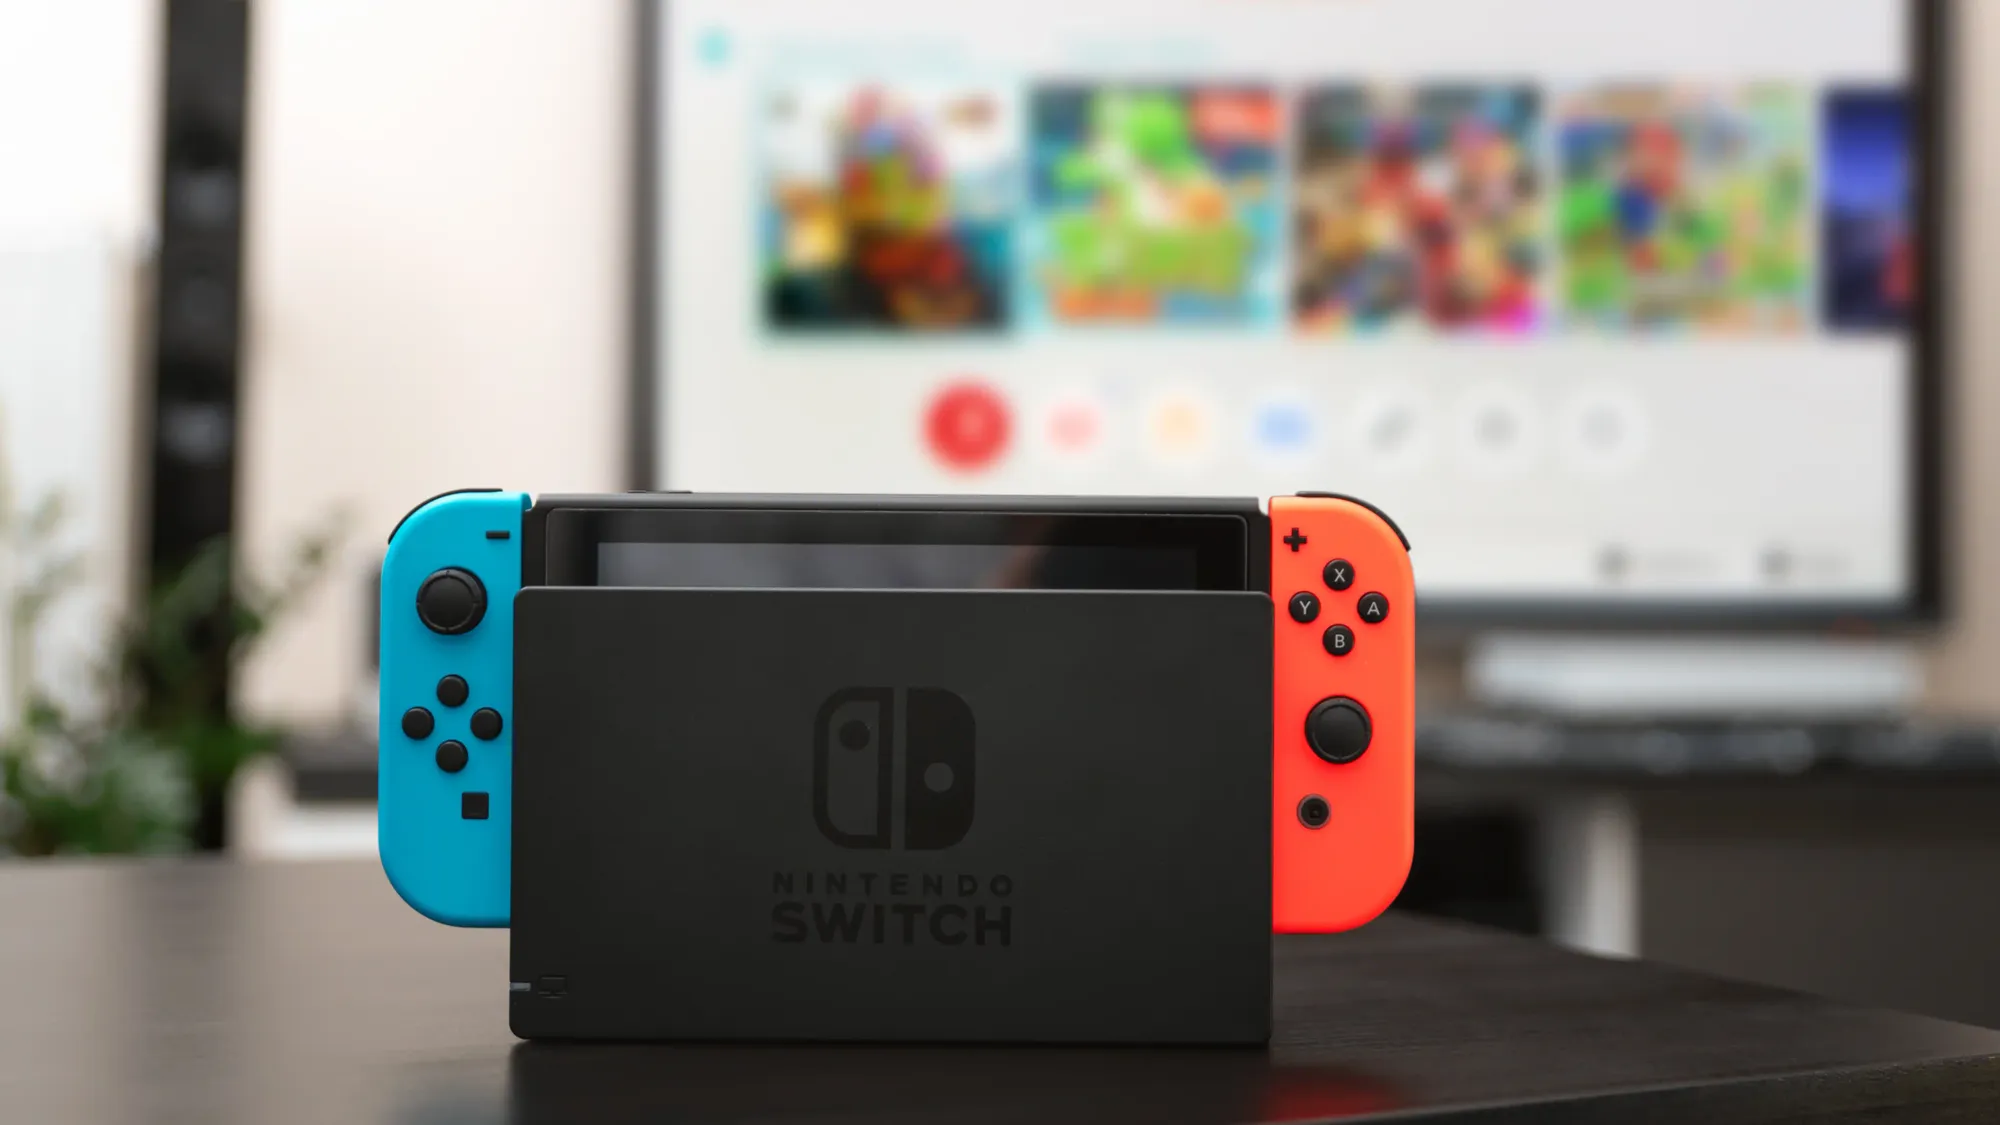 Nintendo Switch X Mercado Livre - O que aconteceu, afinal? 